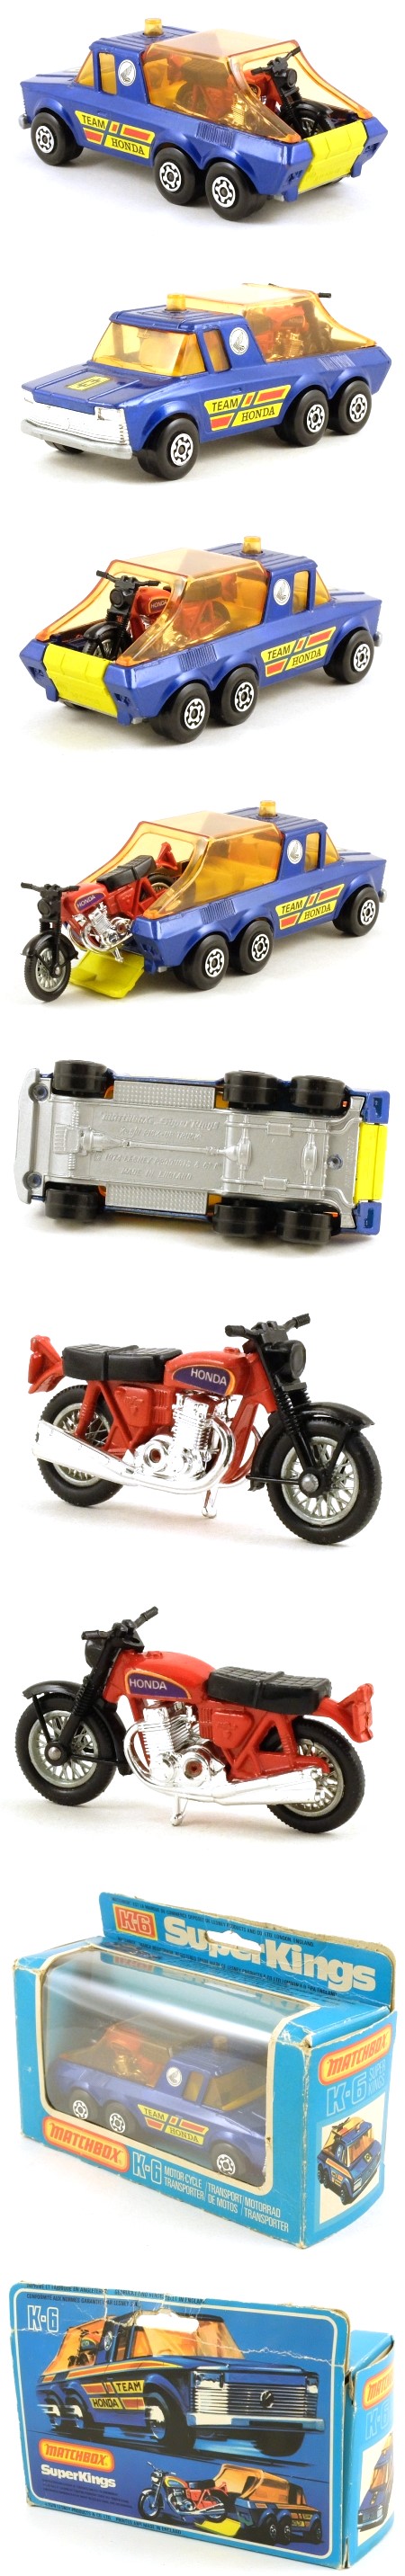 K6-4 Motorcycle Transporter